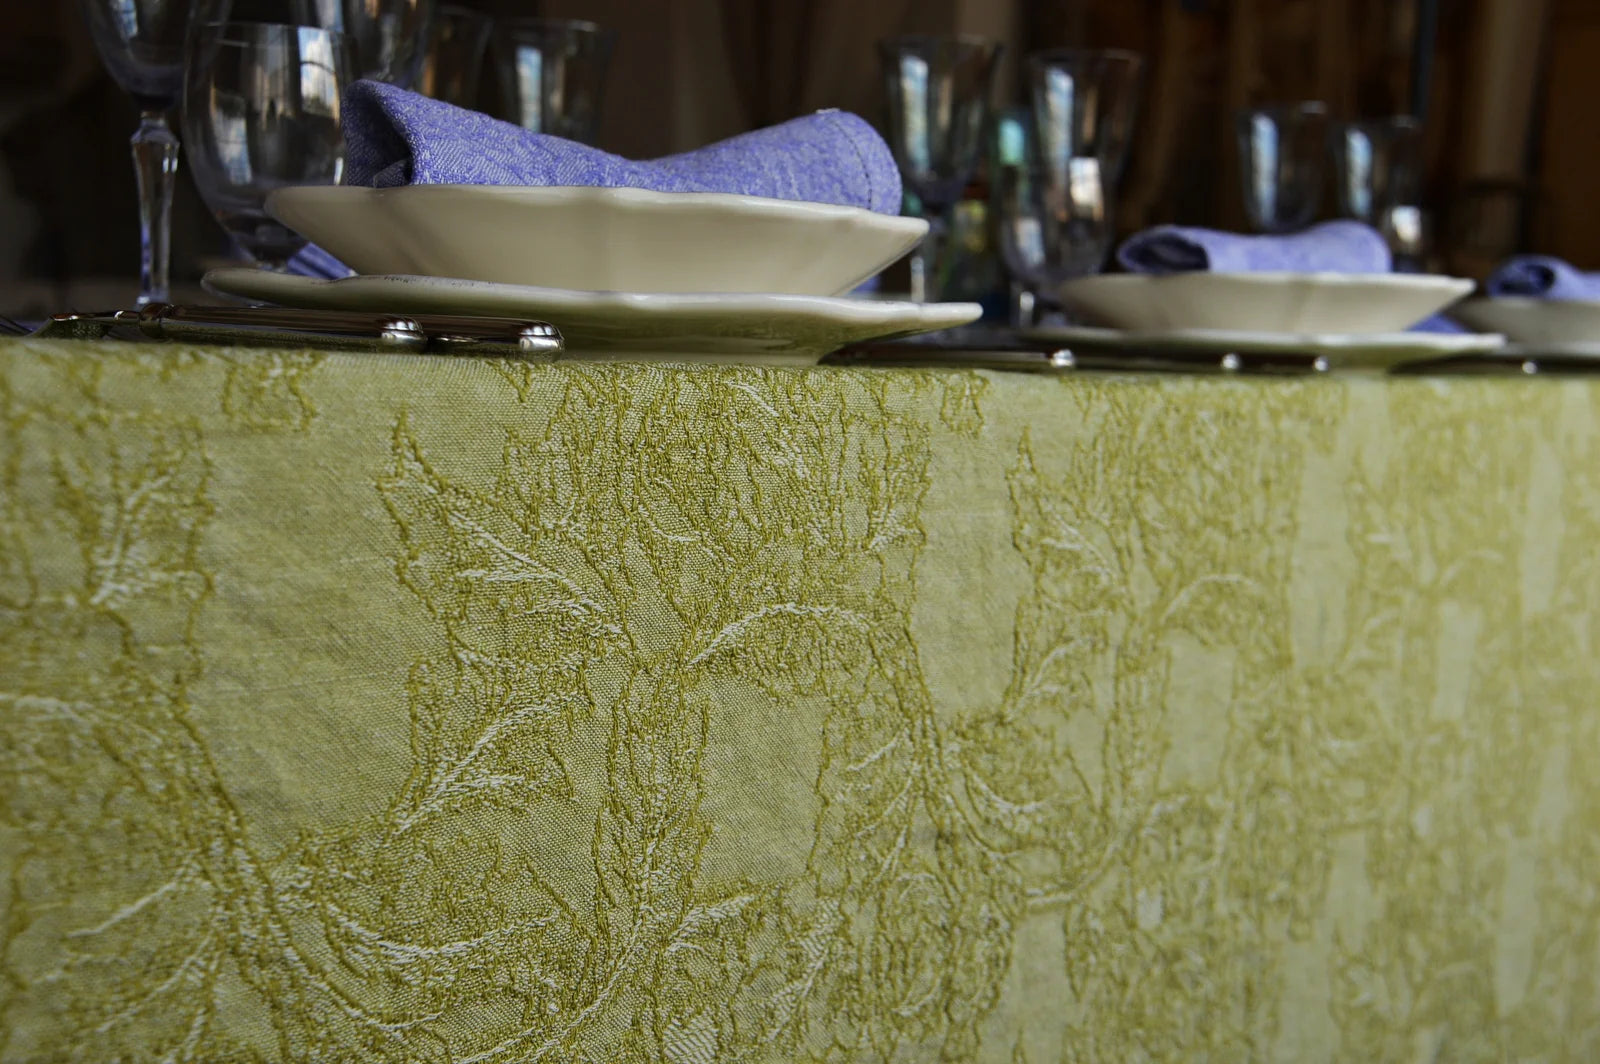 Burraco tovaglia - tablecloth